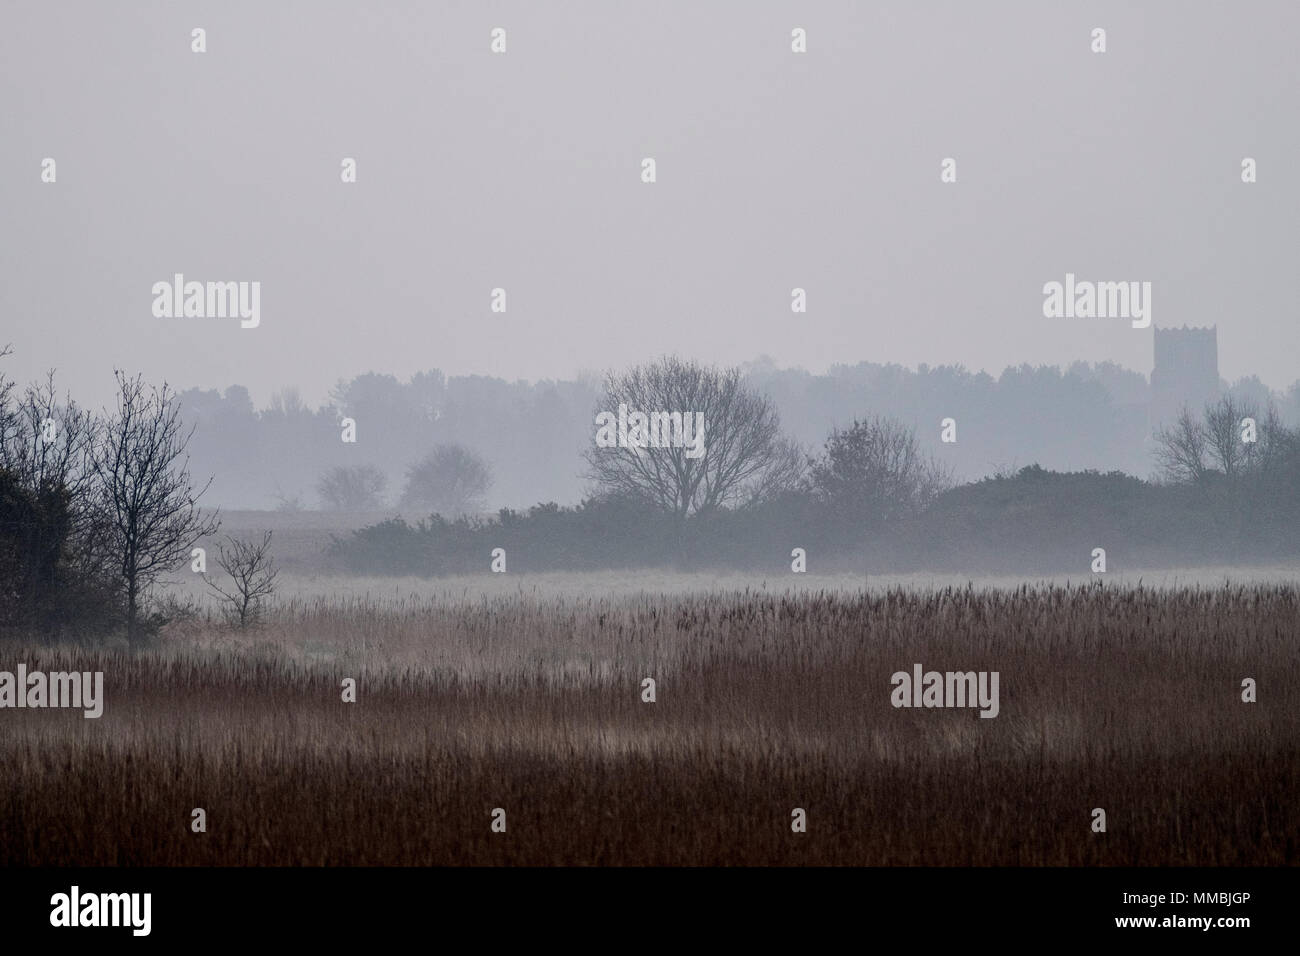 Paesaggio nebuloso con canne e alberi e una torre merlata in distanza. Foto Stock